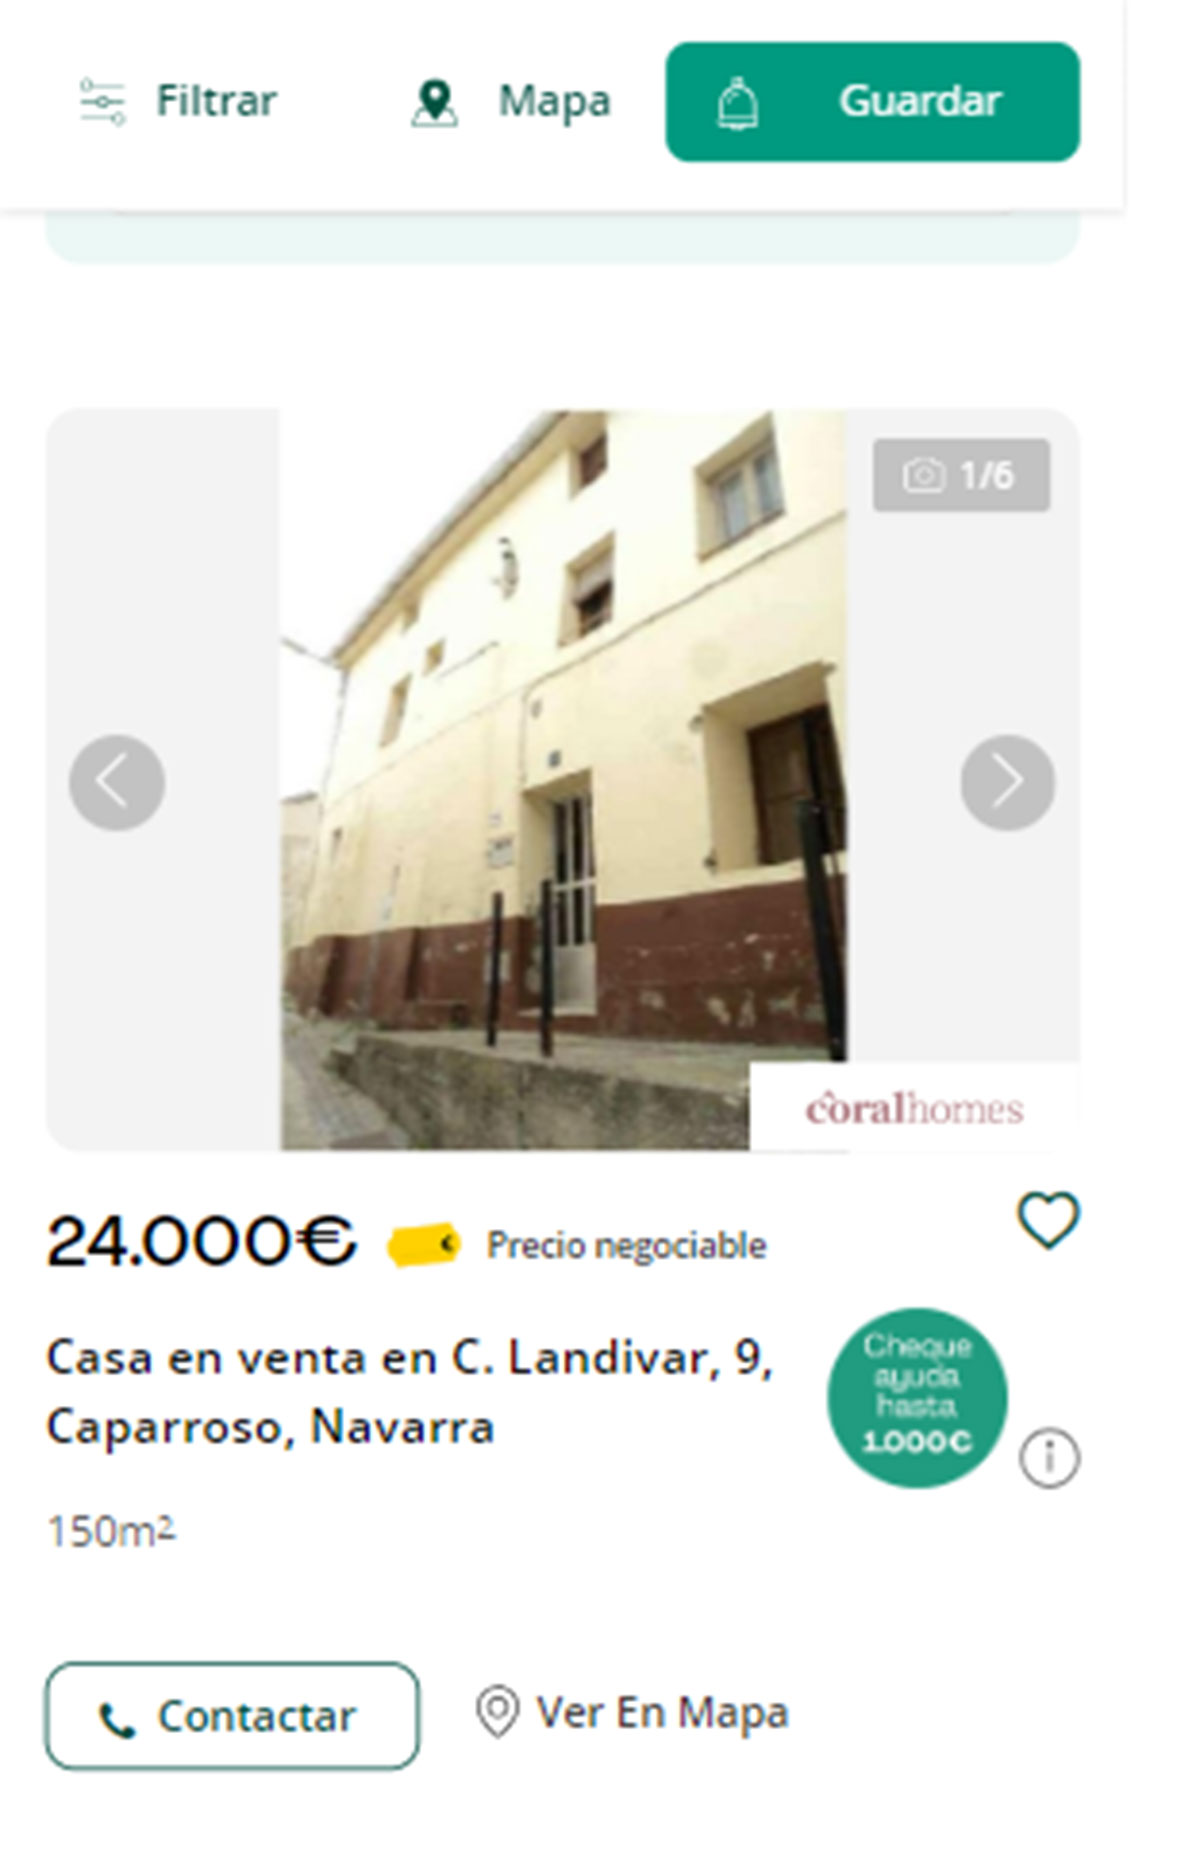 Piso en Navarra por 24.000 euros